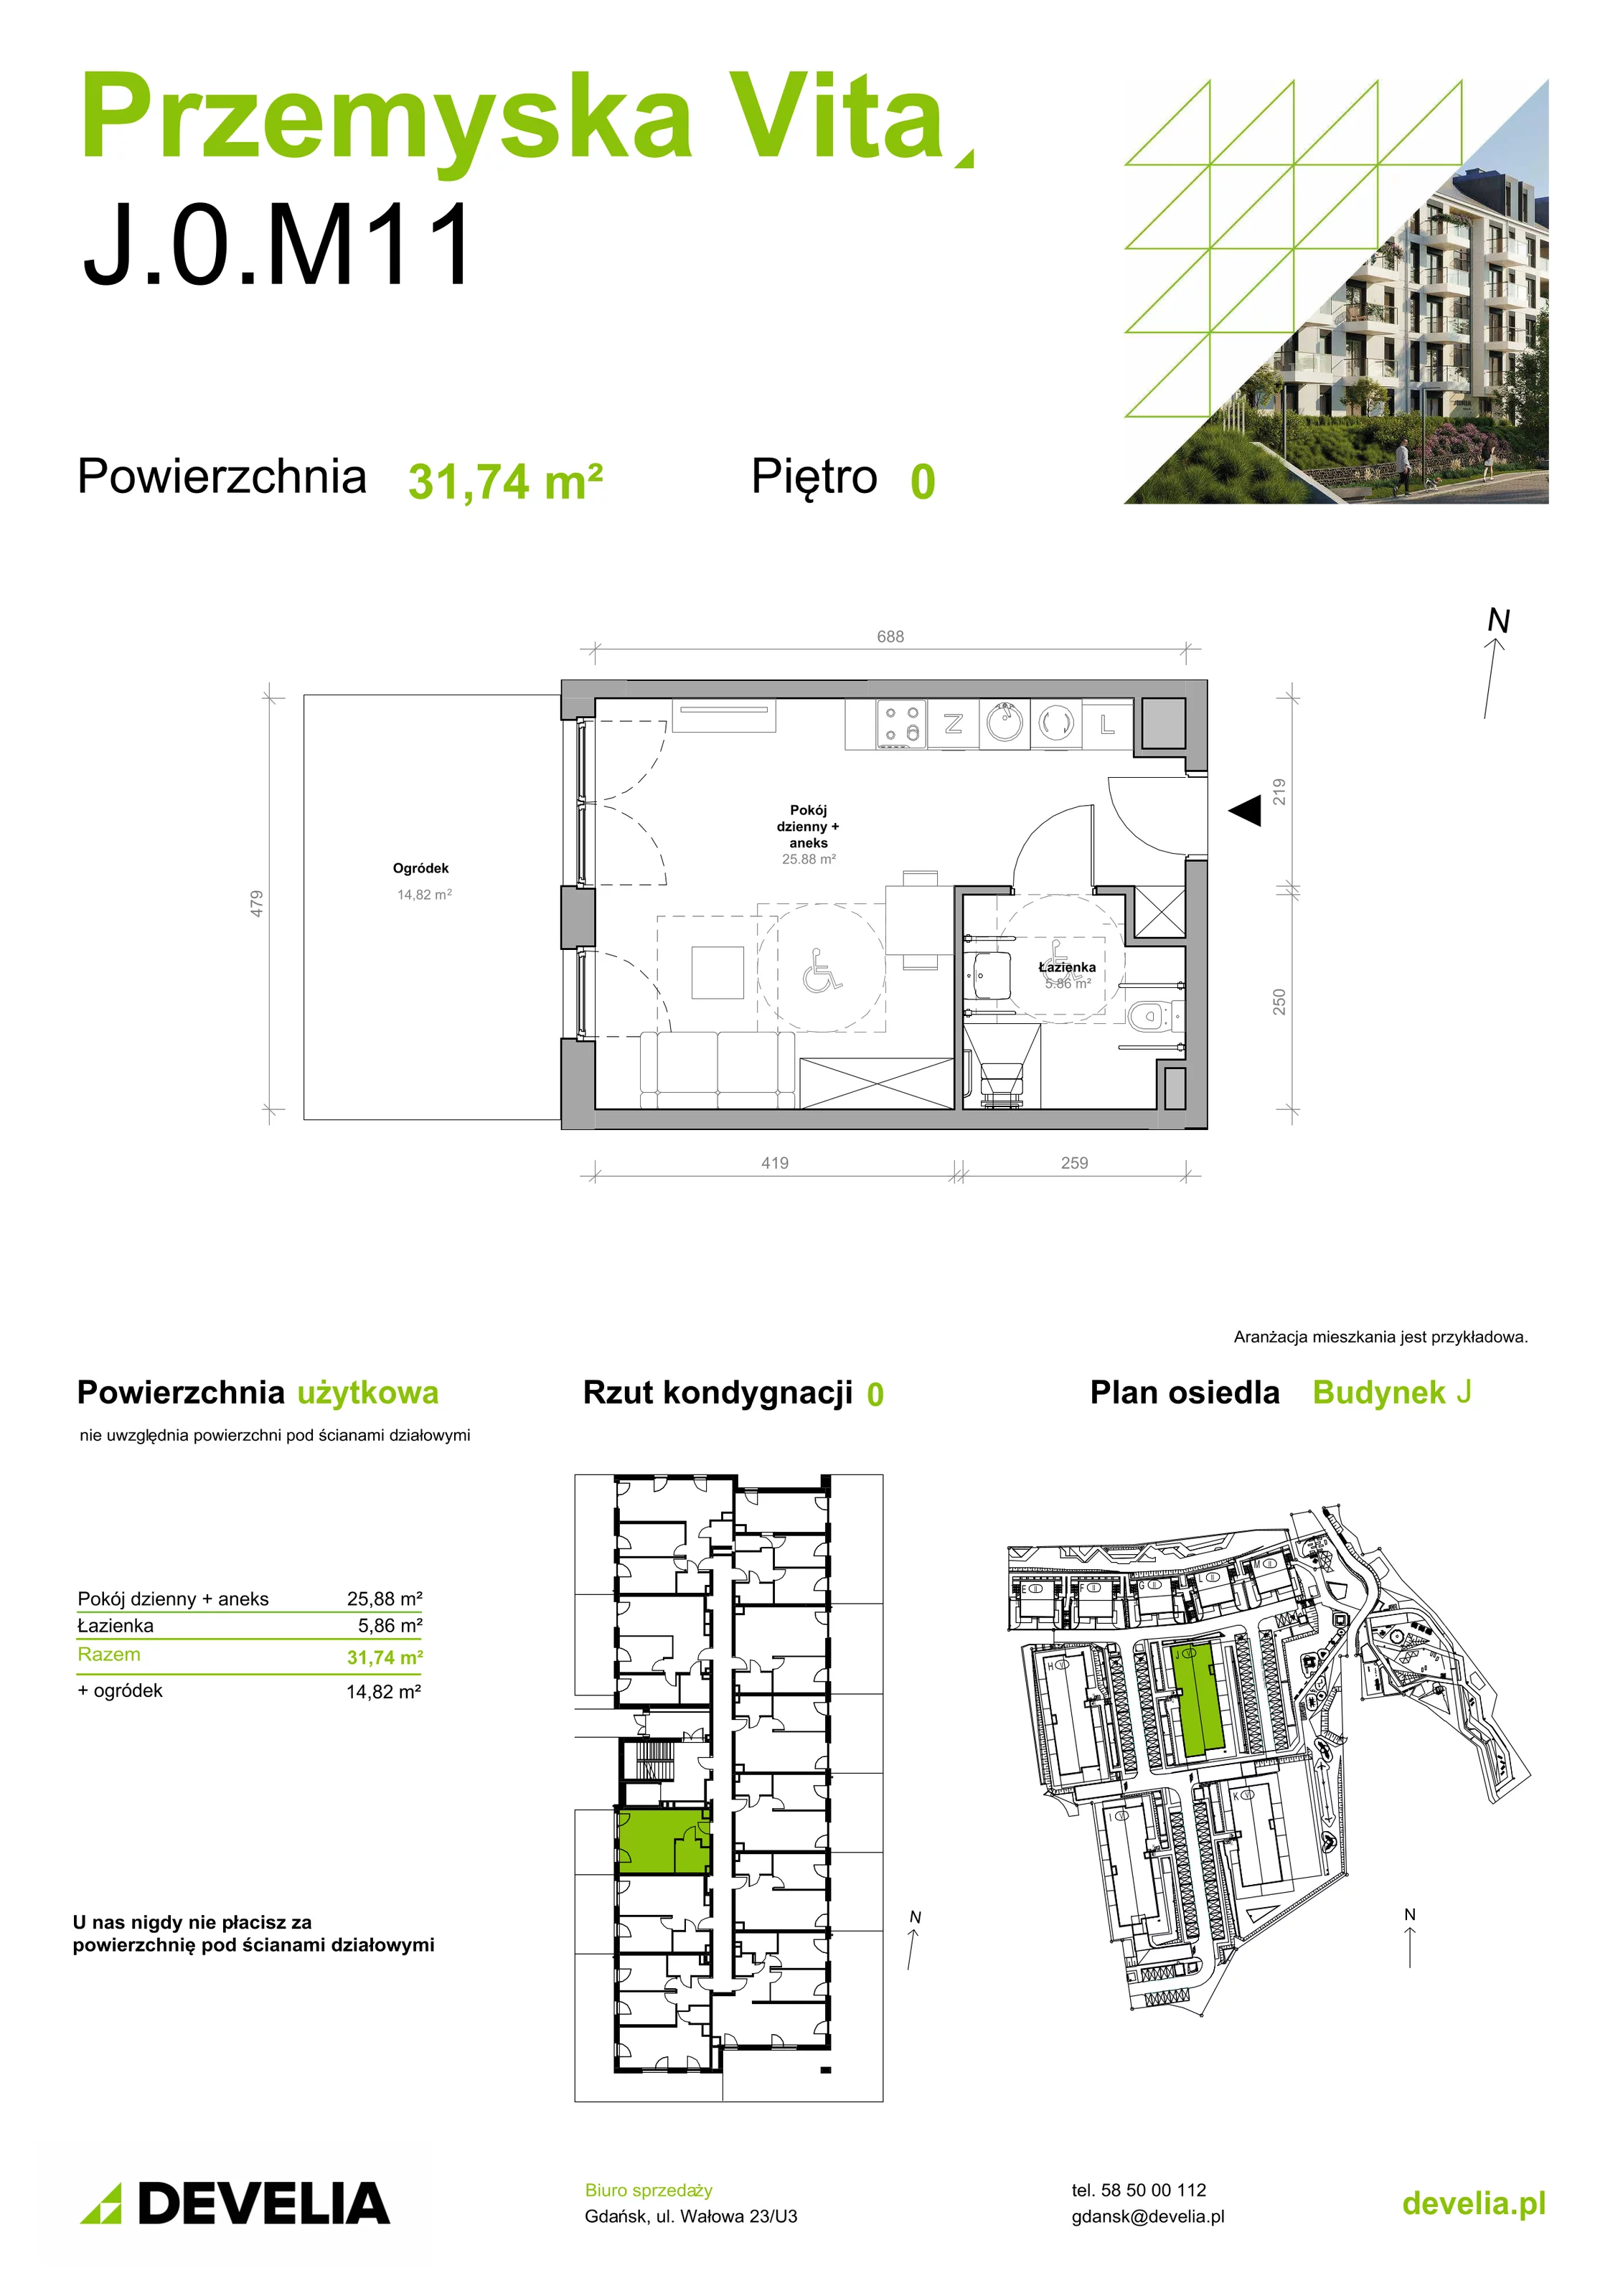 Mieszkanie 31,74 m², parter, oferta nr J.0.M11, Przemyska Vita, Gdańsk, Ujeścisko-Łostowice, Ujeścisko, ul. Przemyska 37